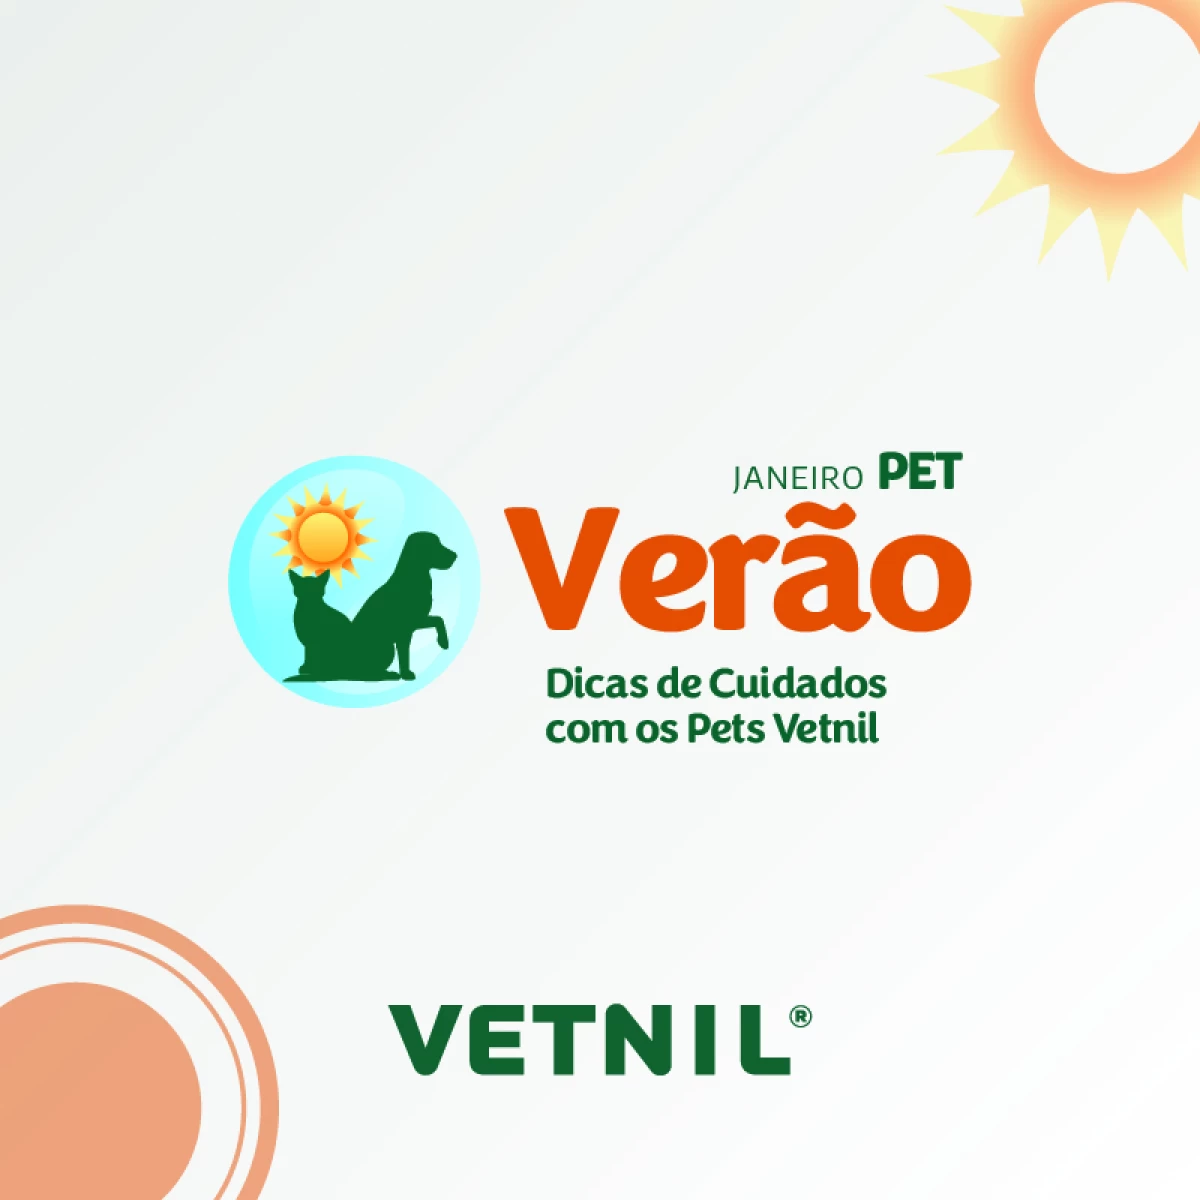 Janeiro Pet Verão - Dicas de Cuidados com Pets - Vetnil